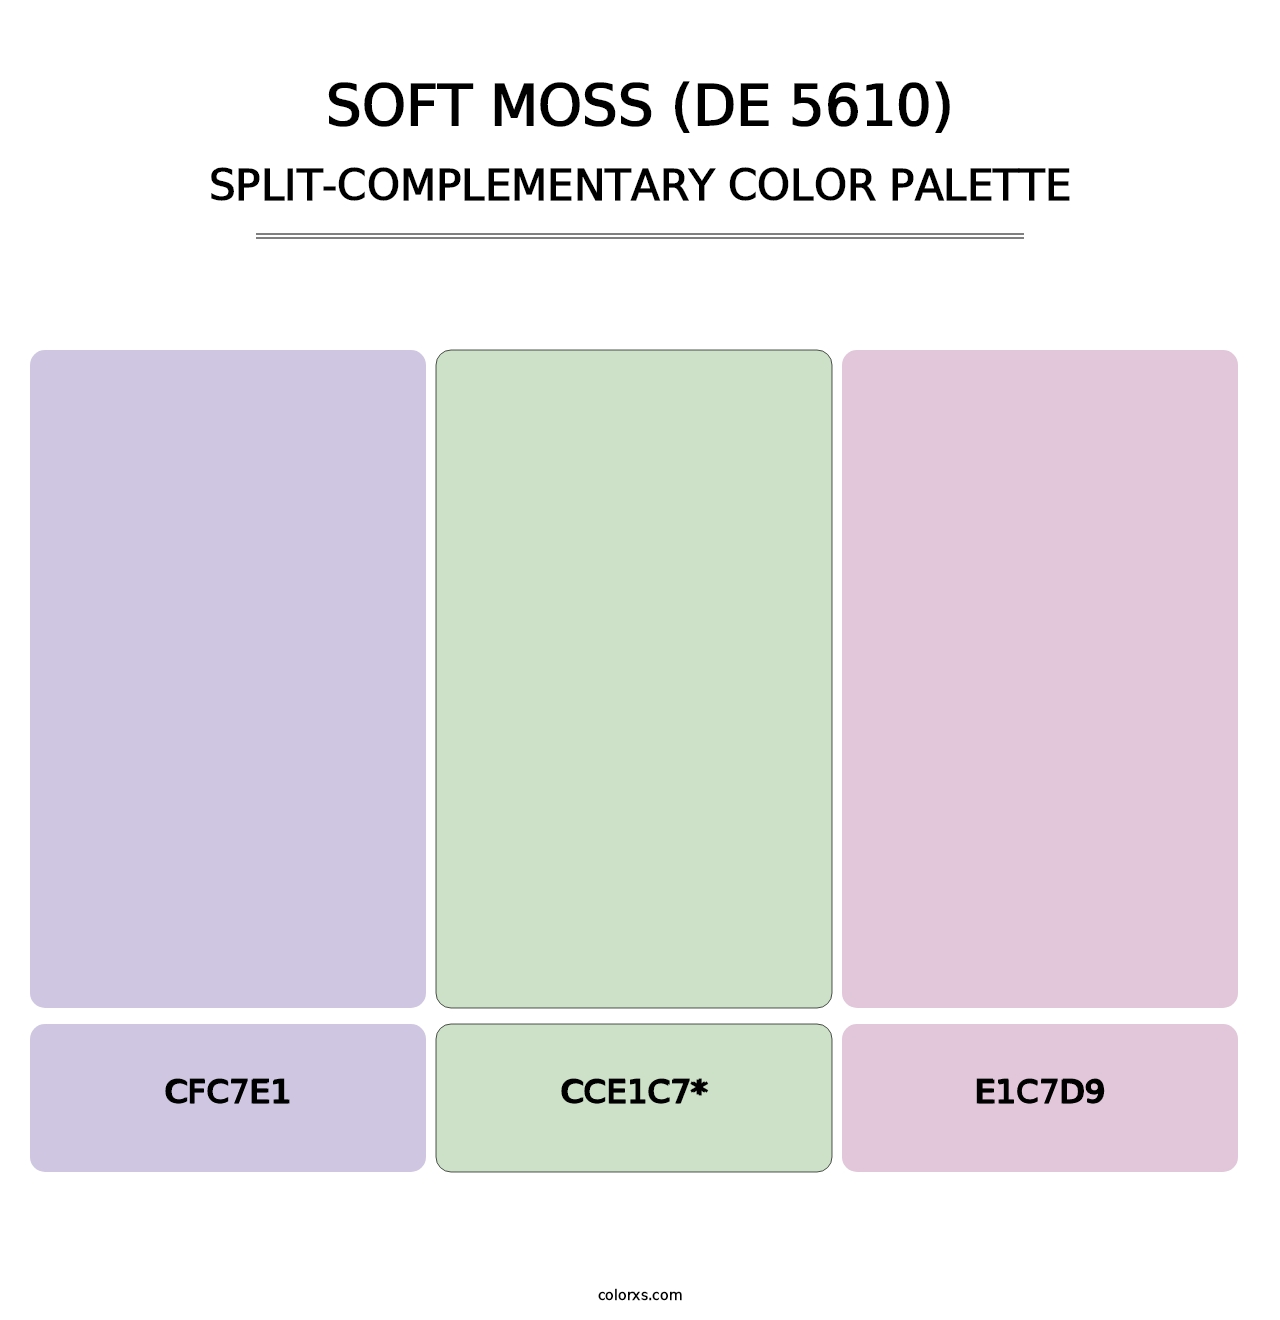 Soft Moss (DE 5610) - Split-Complementary Color Palette